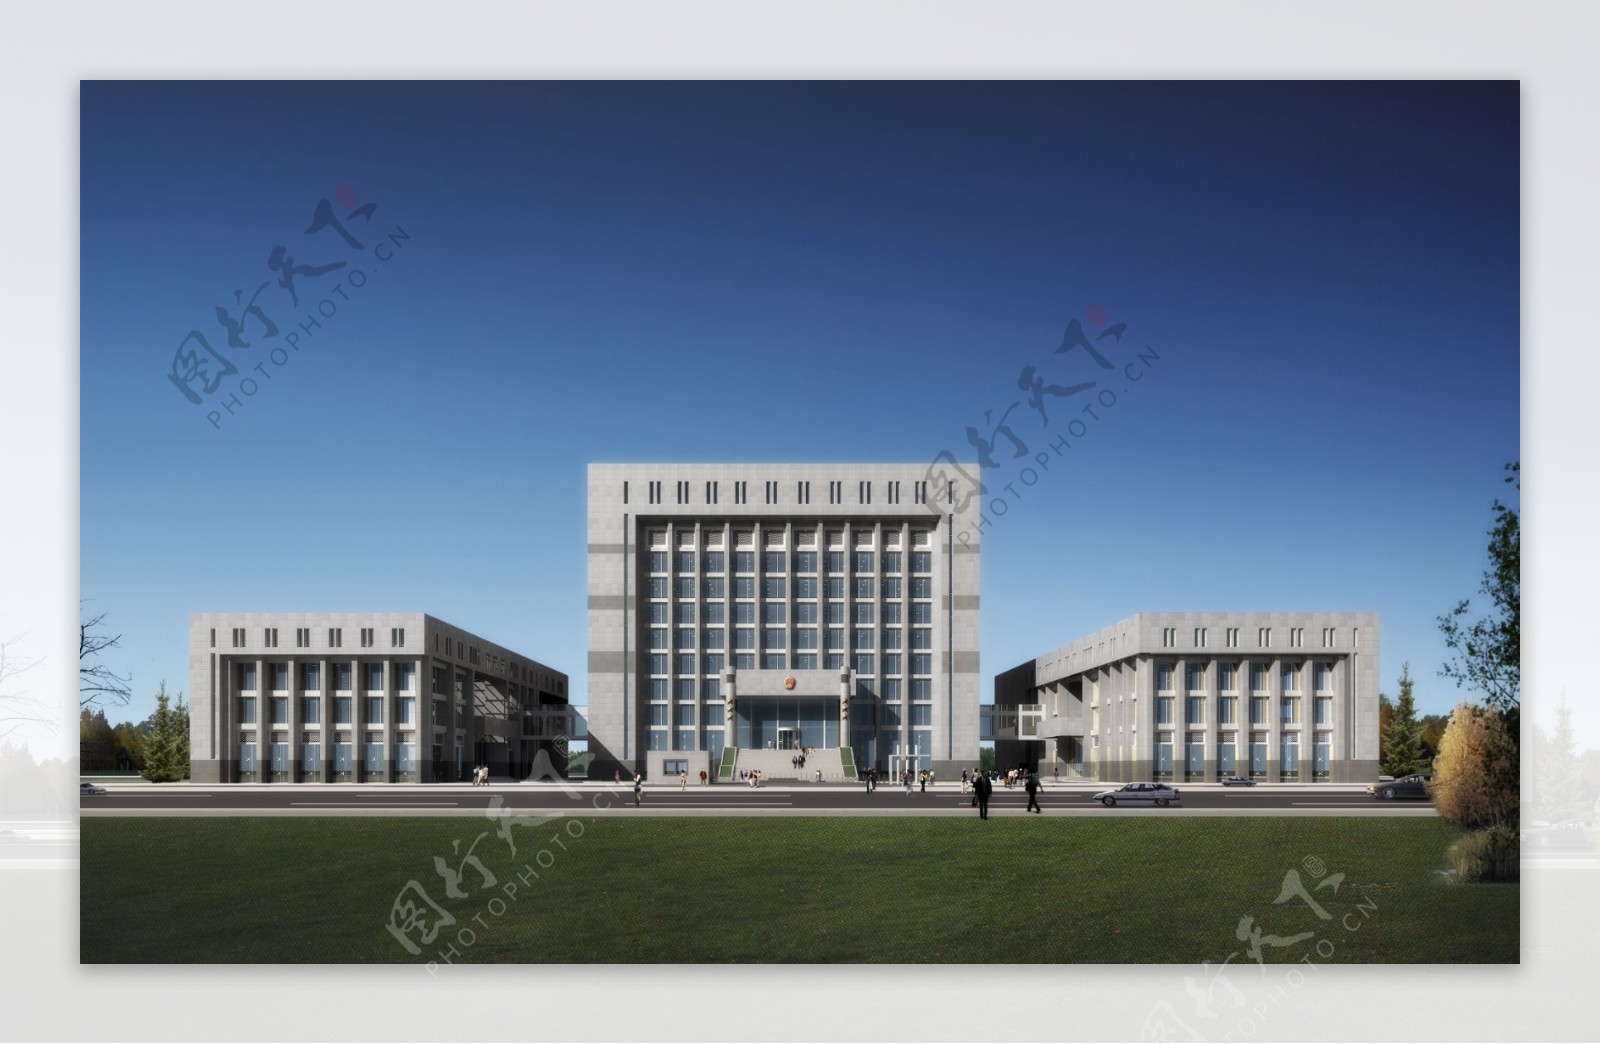 法院大楼效果图图片